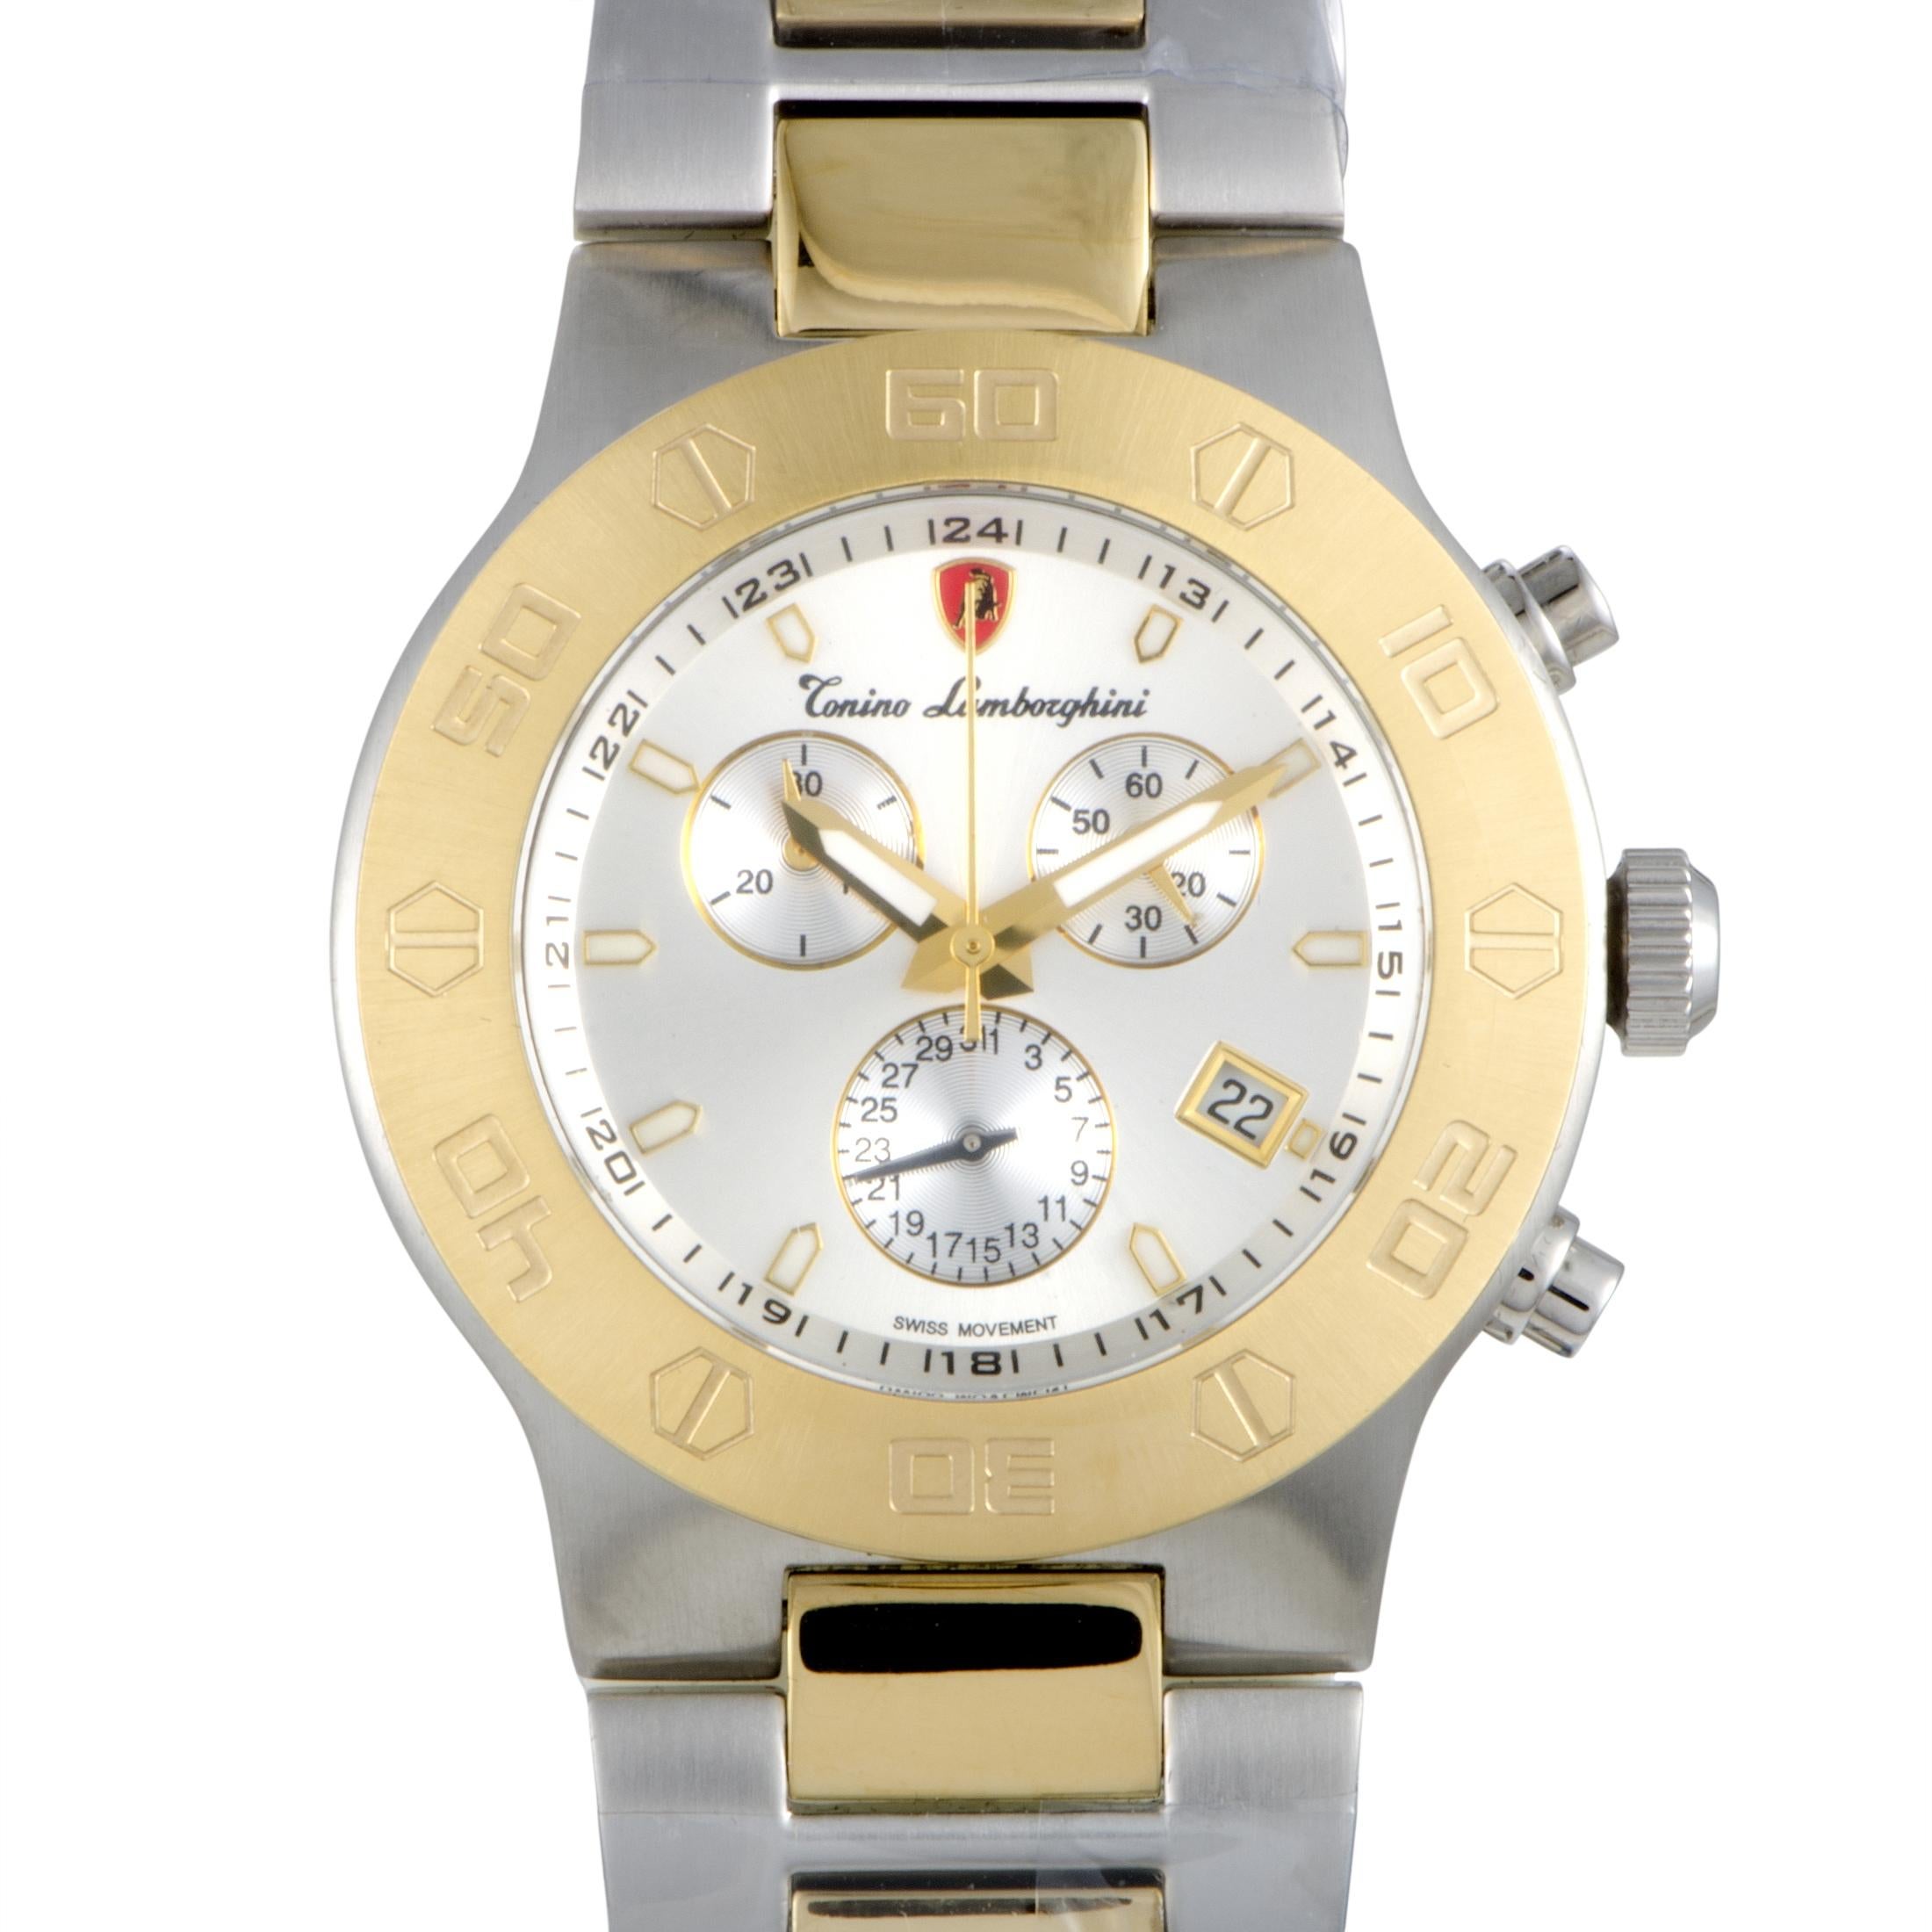 Tonino Lamborghini EN Models Men's Quartz Chronograph Watch EN034.302 1